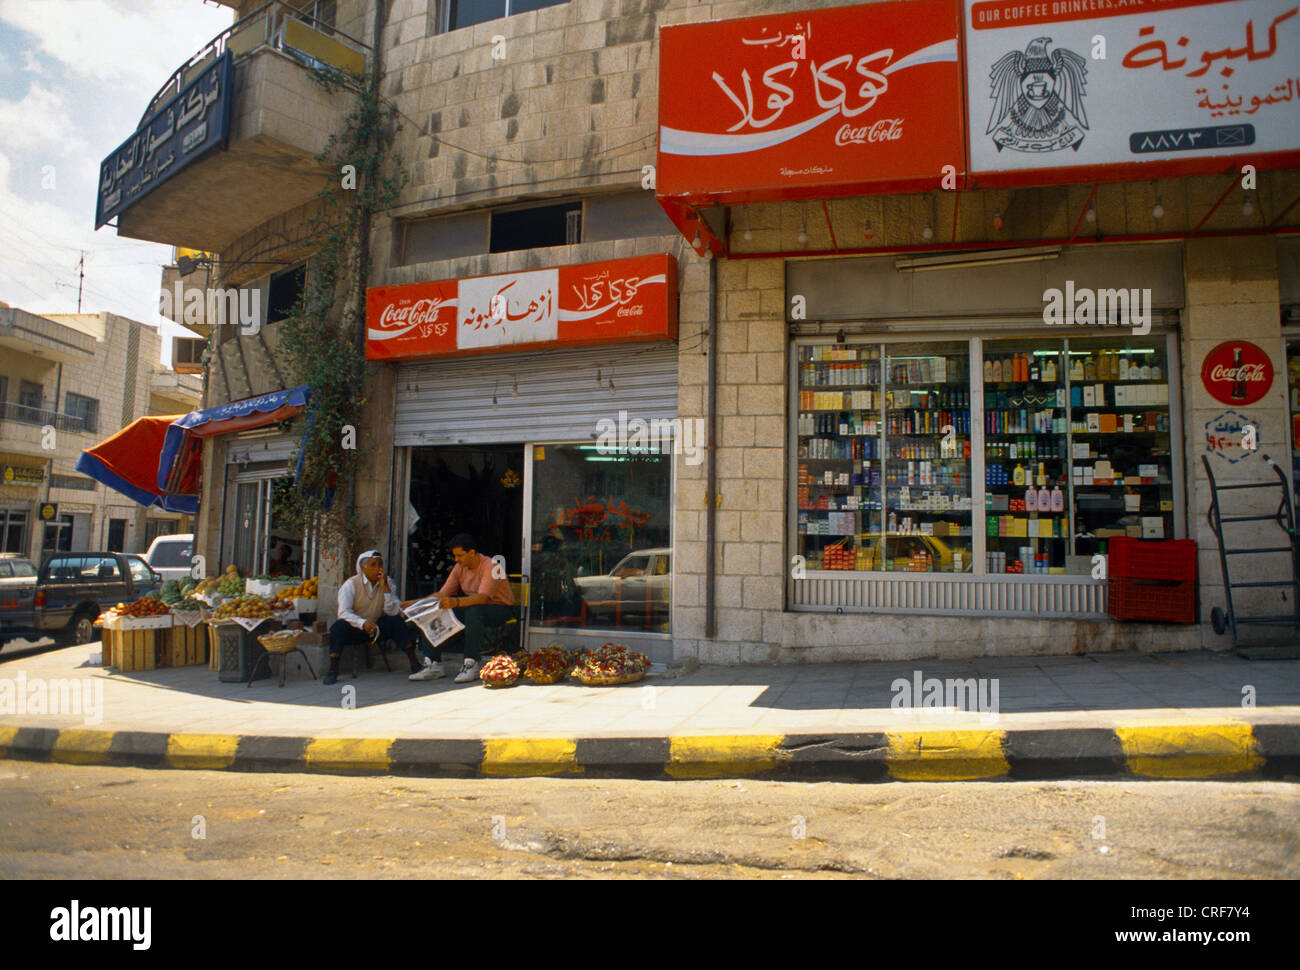 Amman Jordan Street Szene Läden mit Coca Cola Werbung In Arabisch Stockfoto